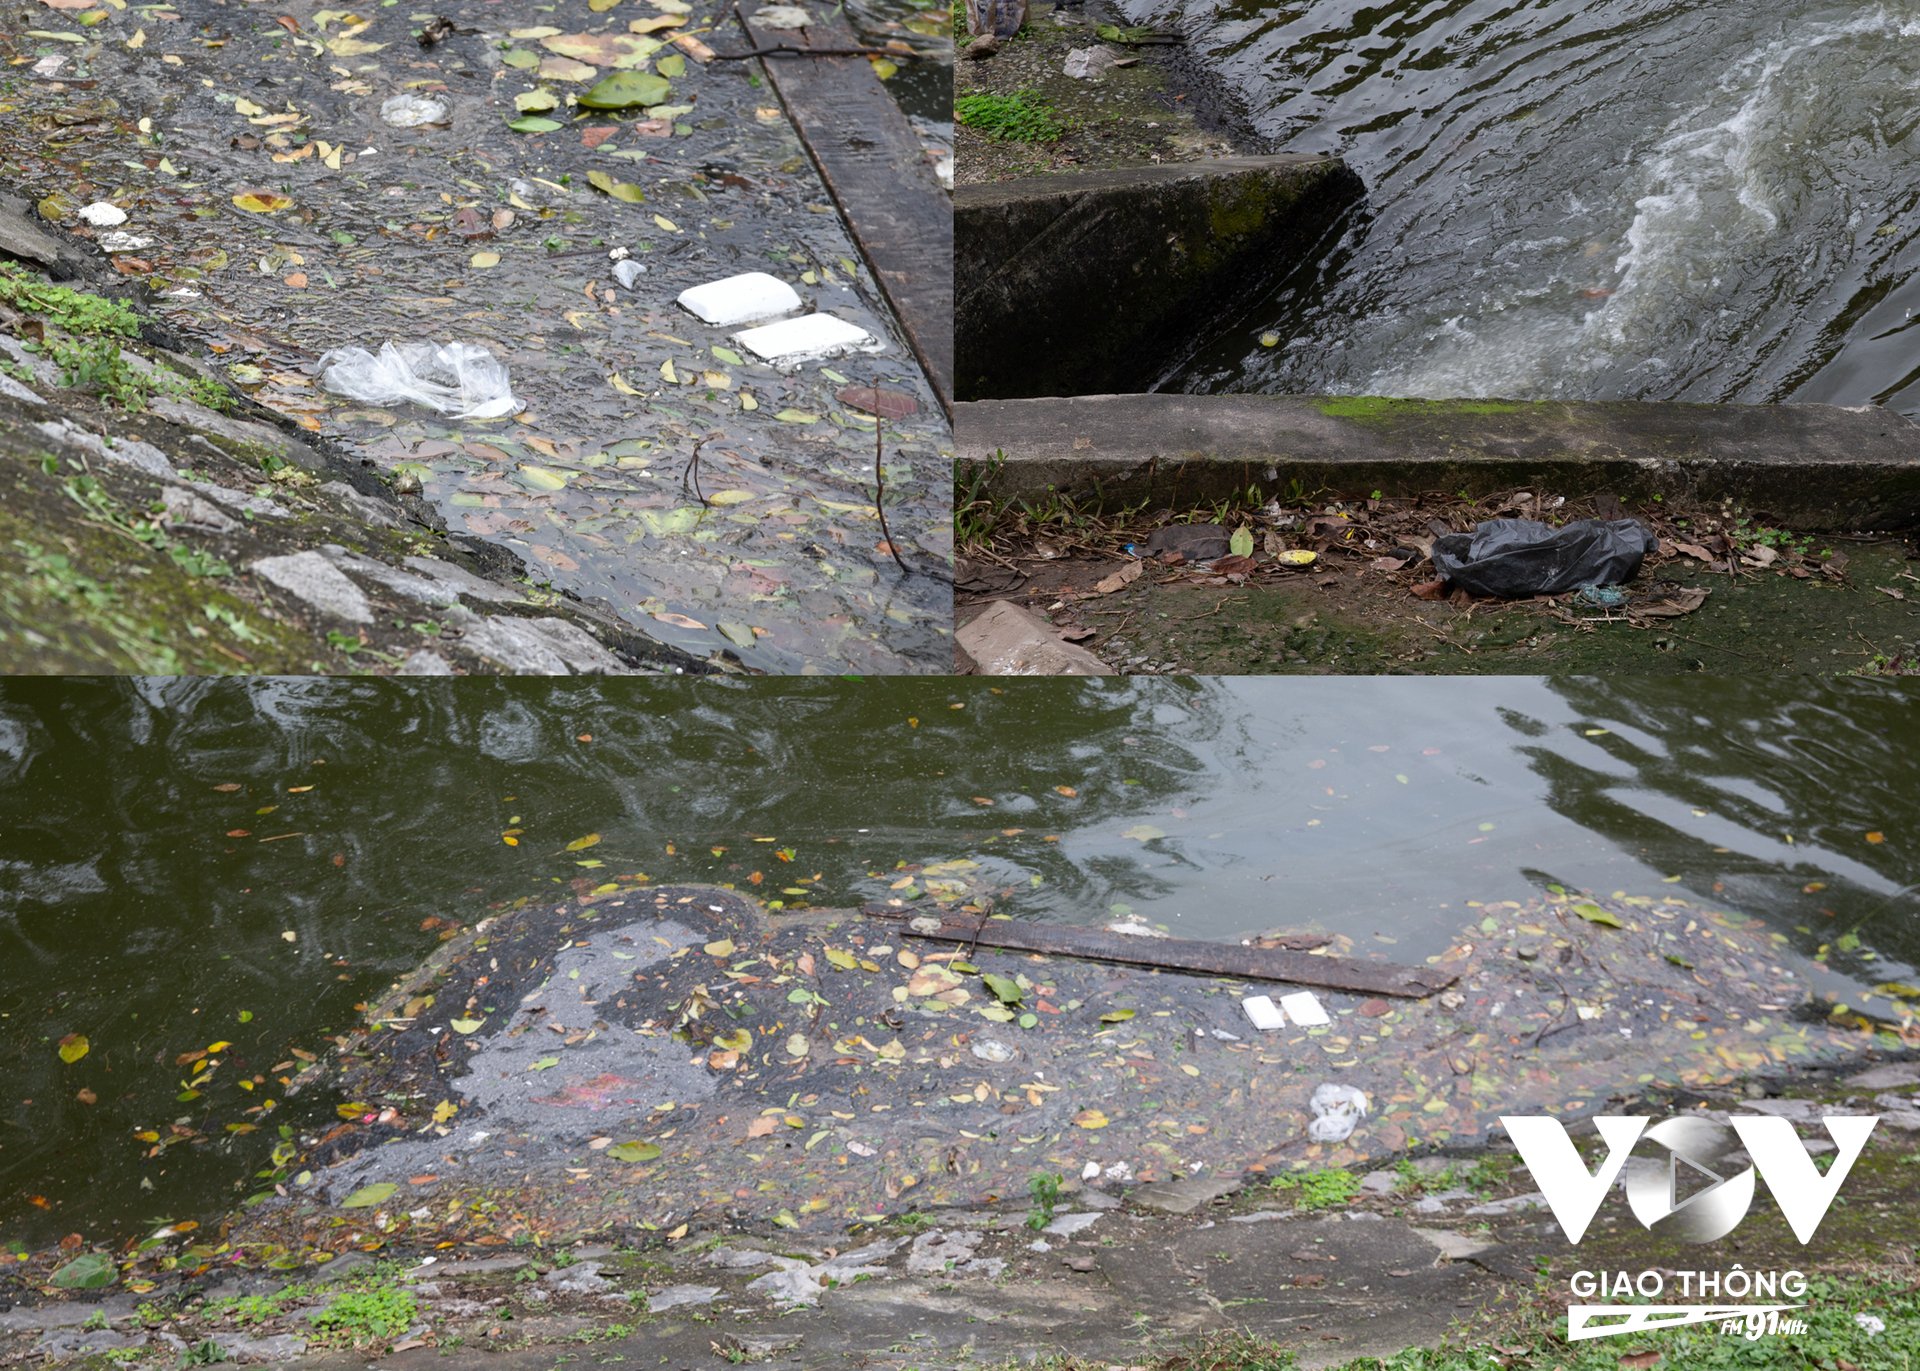 Nước hồ đang trong tình trạng ô nhiễm, rác bẩn bốc mùi hôi thối nổi đầy trên mặt hồ